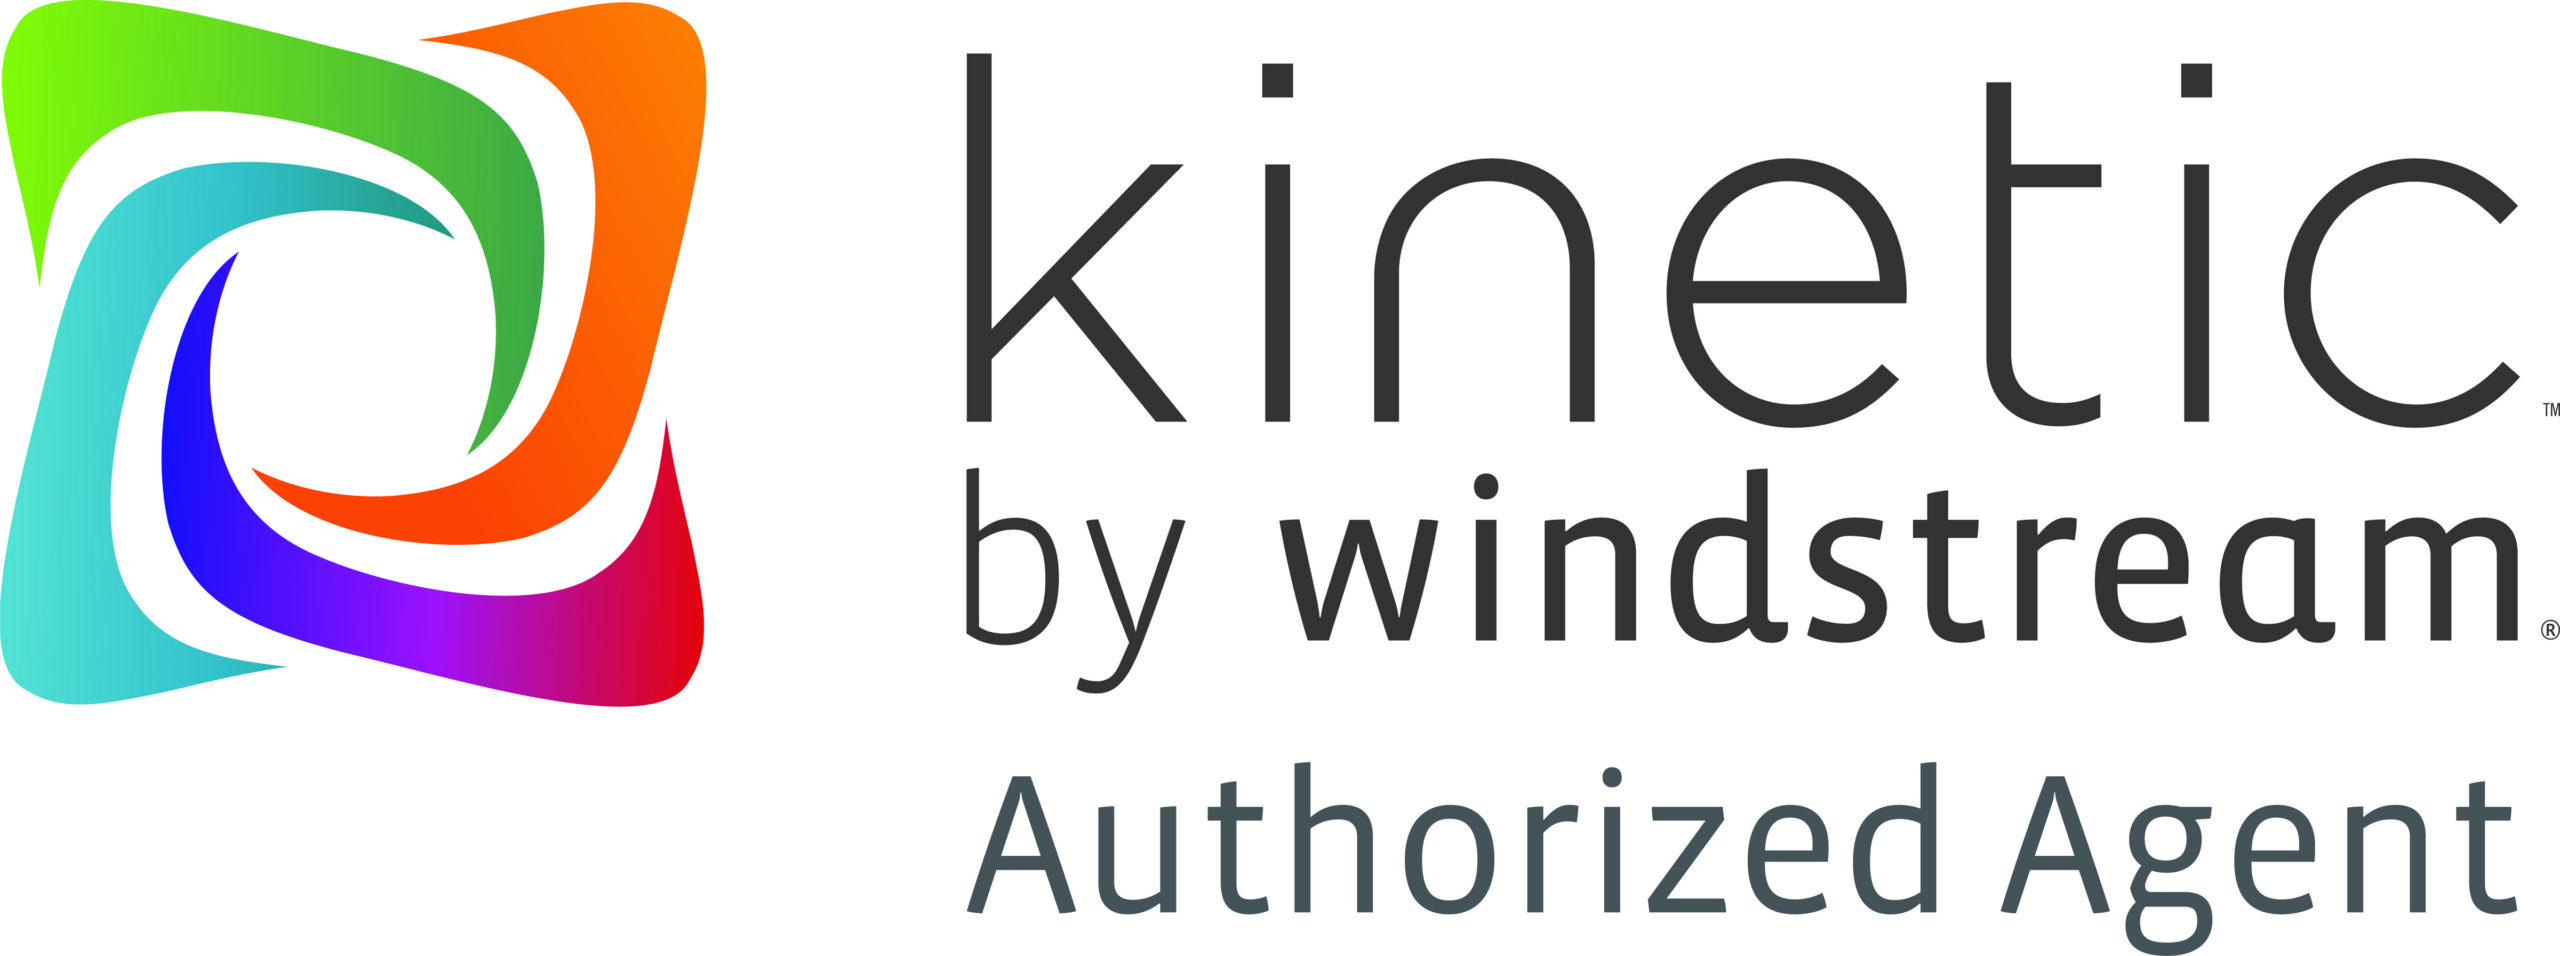 Kinetic-LogoSet-20170825